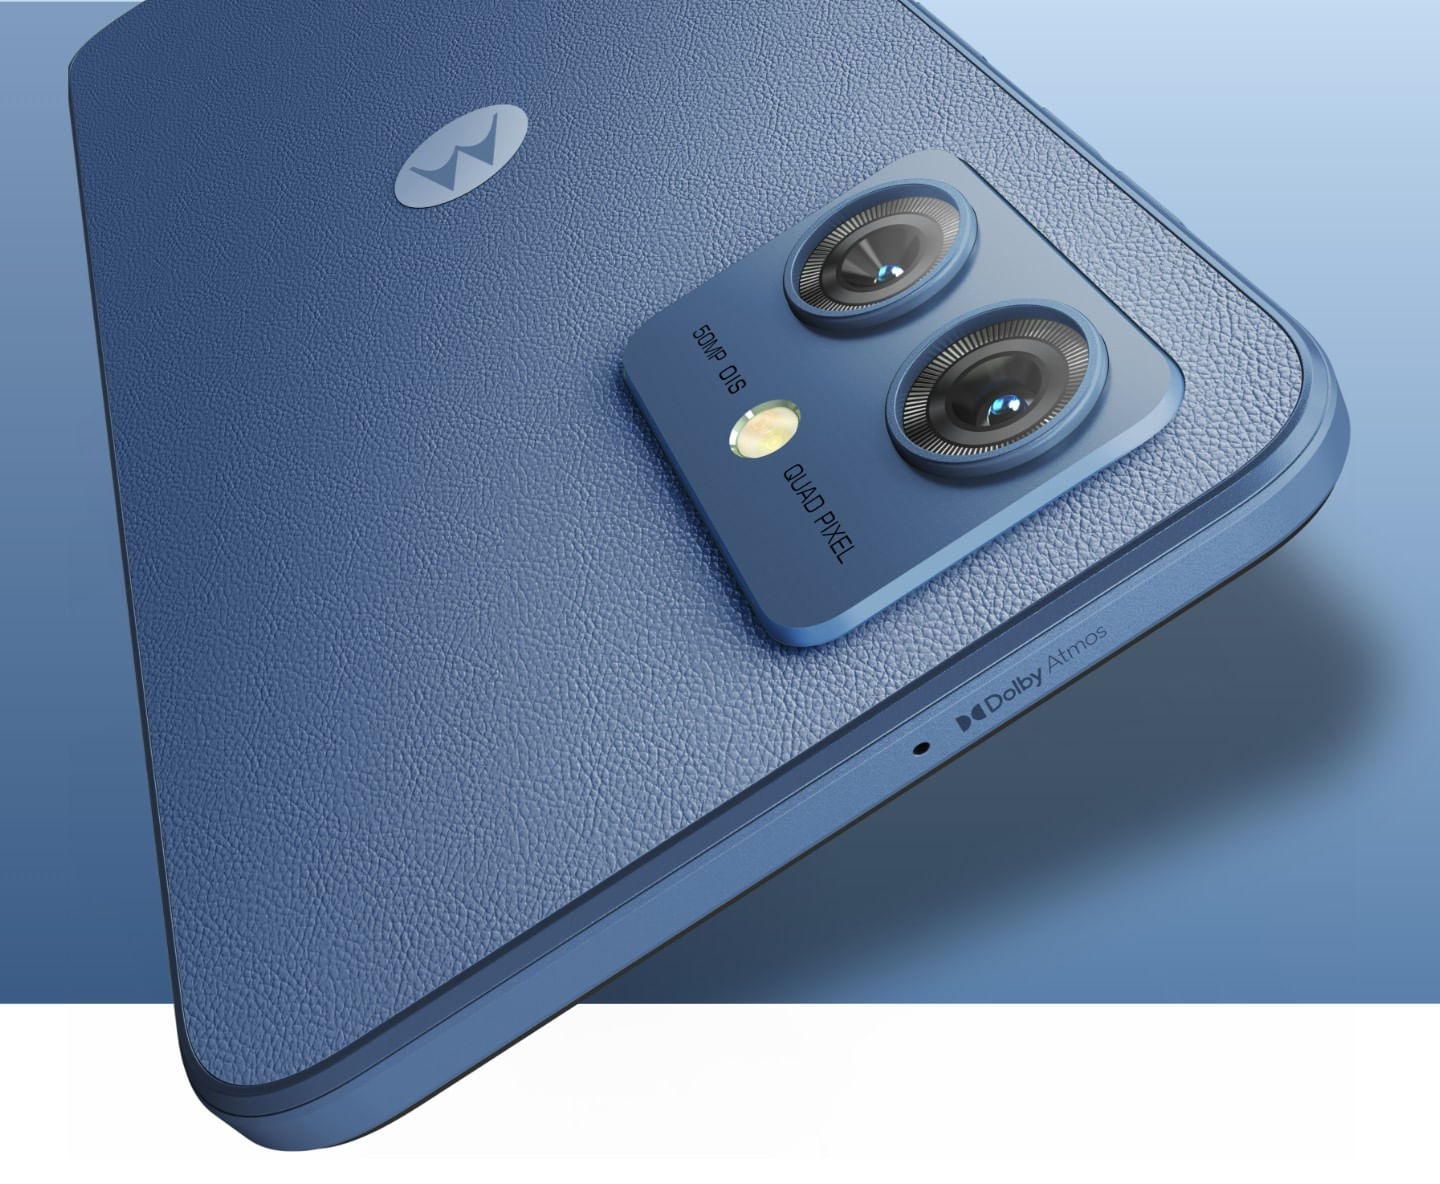 Moto g54 con sonido dolby atmos + doble cámara con 50MP - Motorola Chile